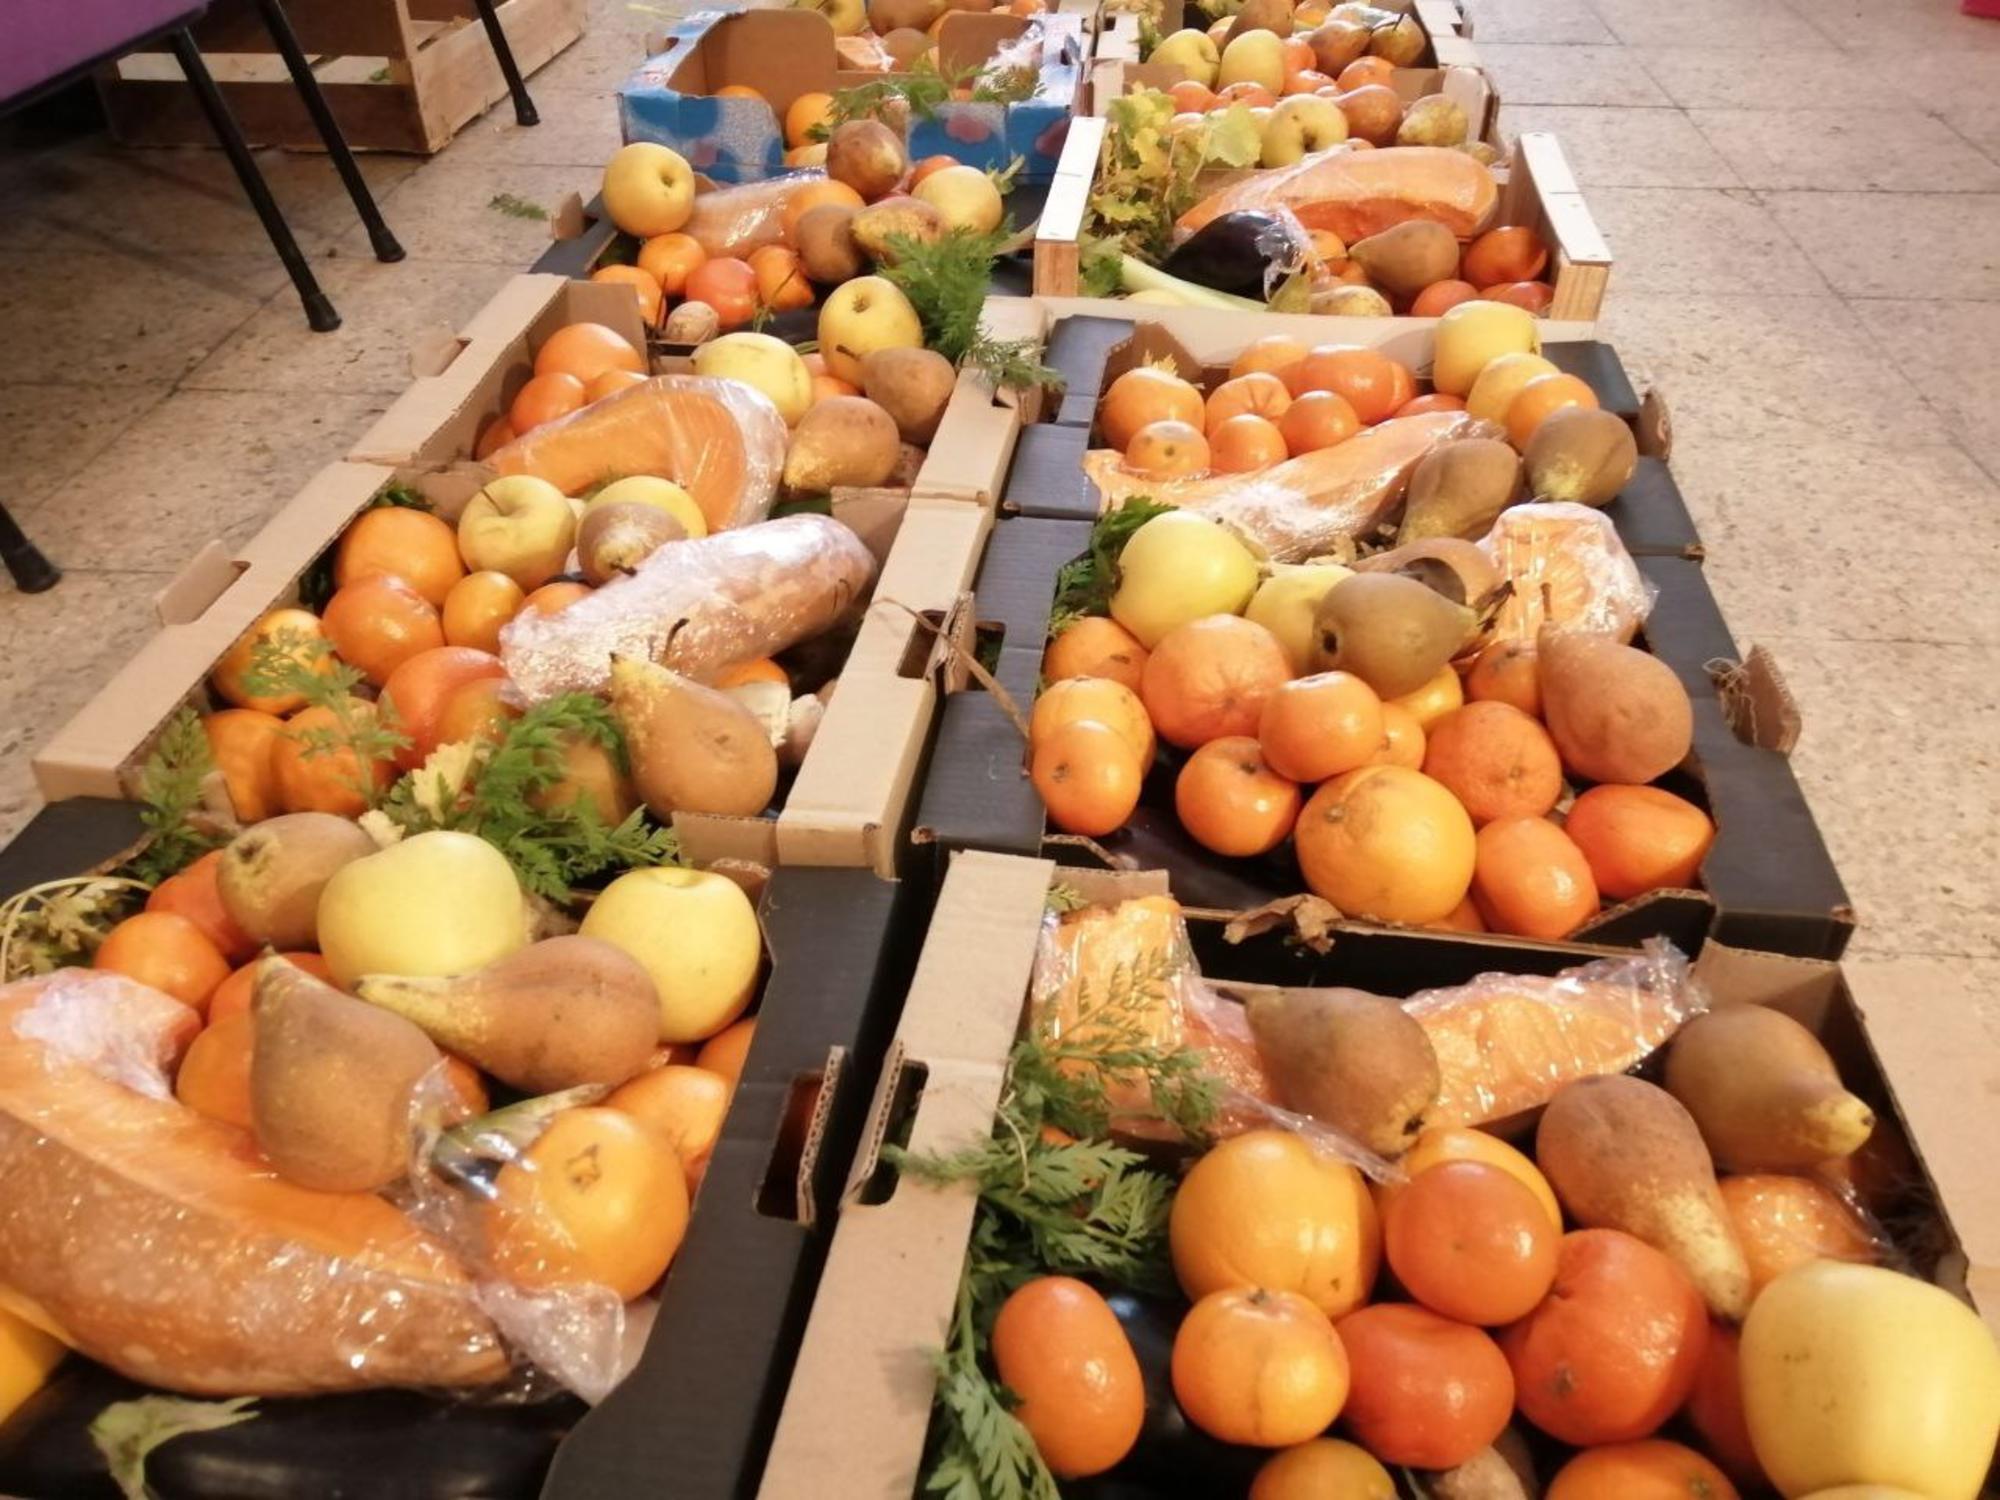 Cajas con fruta y verdura para reparto de alimentos